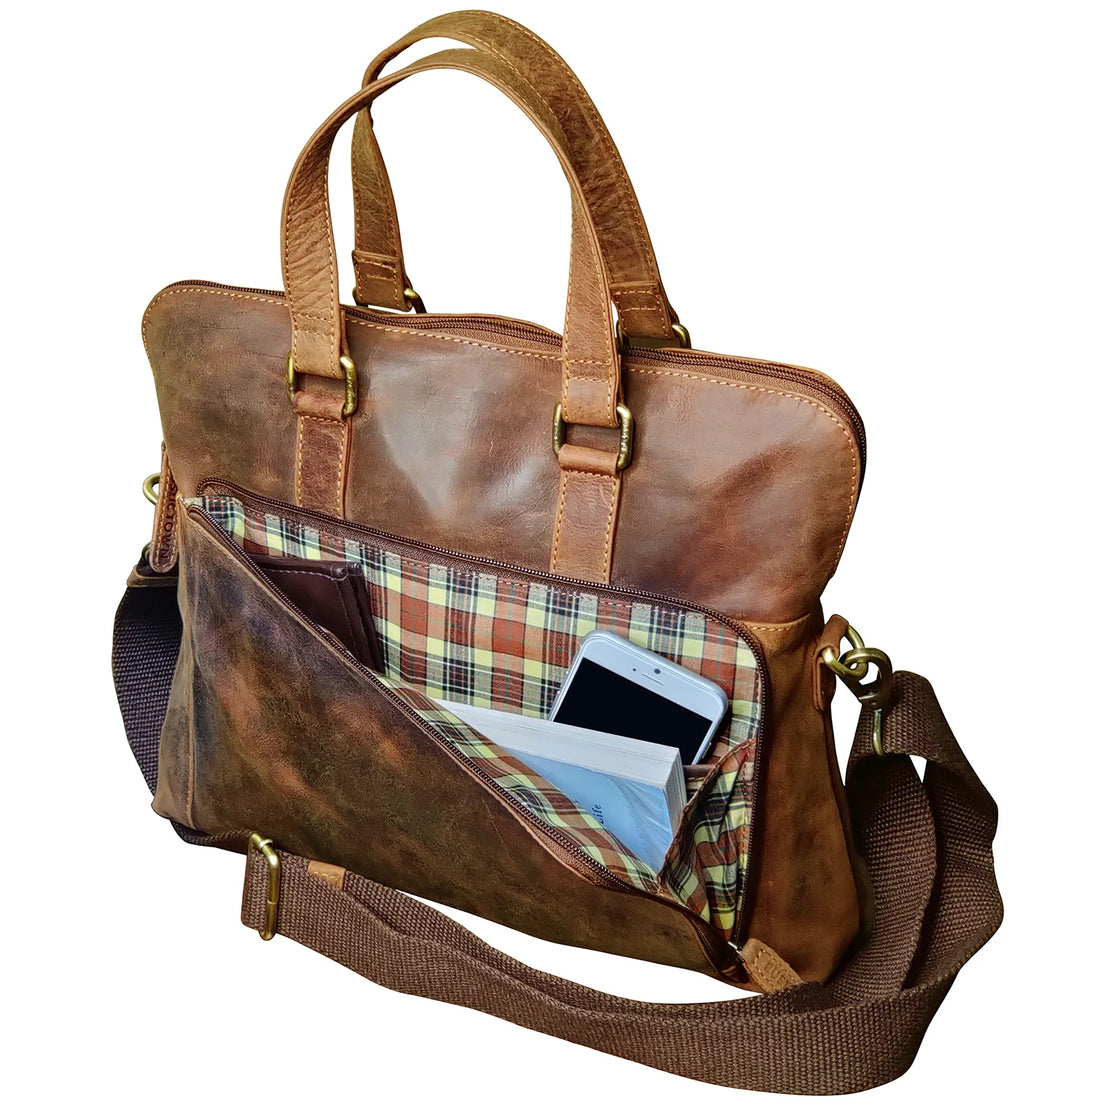 Leather Messenger Bag for Men Women Vintage Travel 14 inch Laptop Briefcase Shoulder Bag